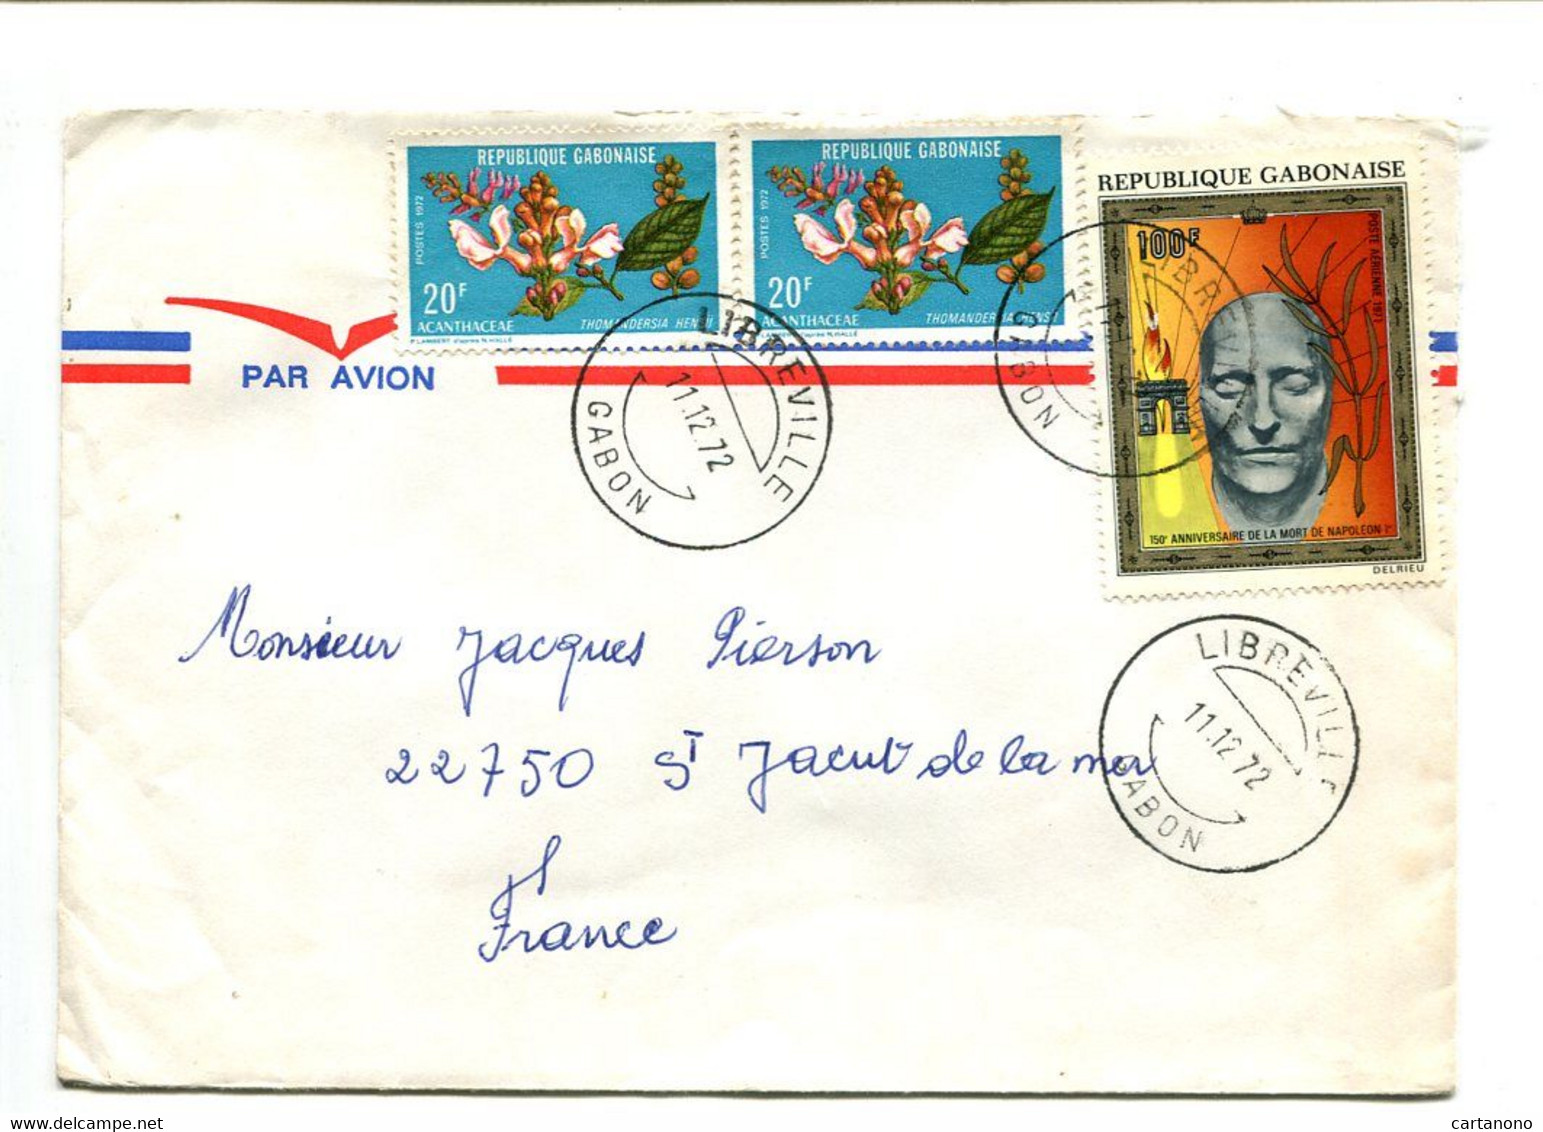 GABON Libreville 1972 - Affranchissement Sur Lettre Par Avion - Napoléon / Fleurs - Napoléon